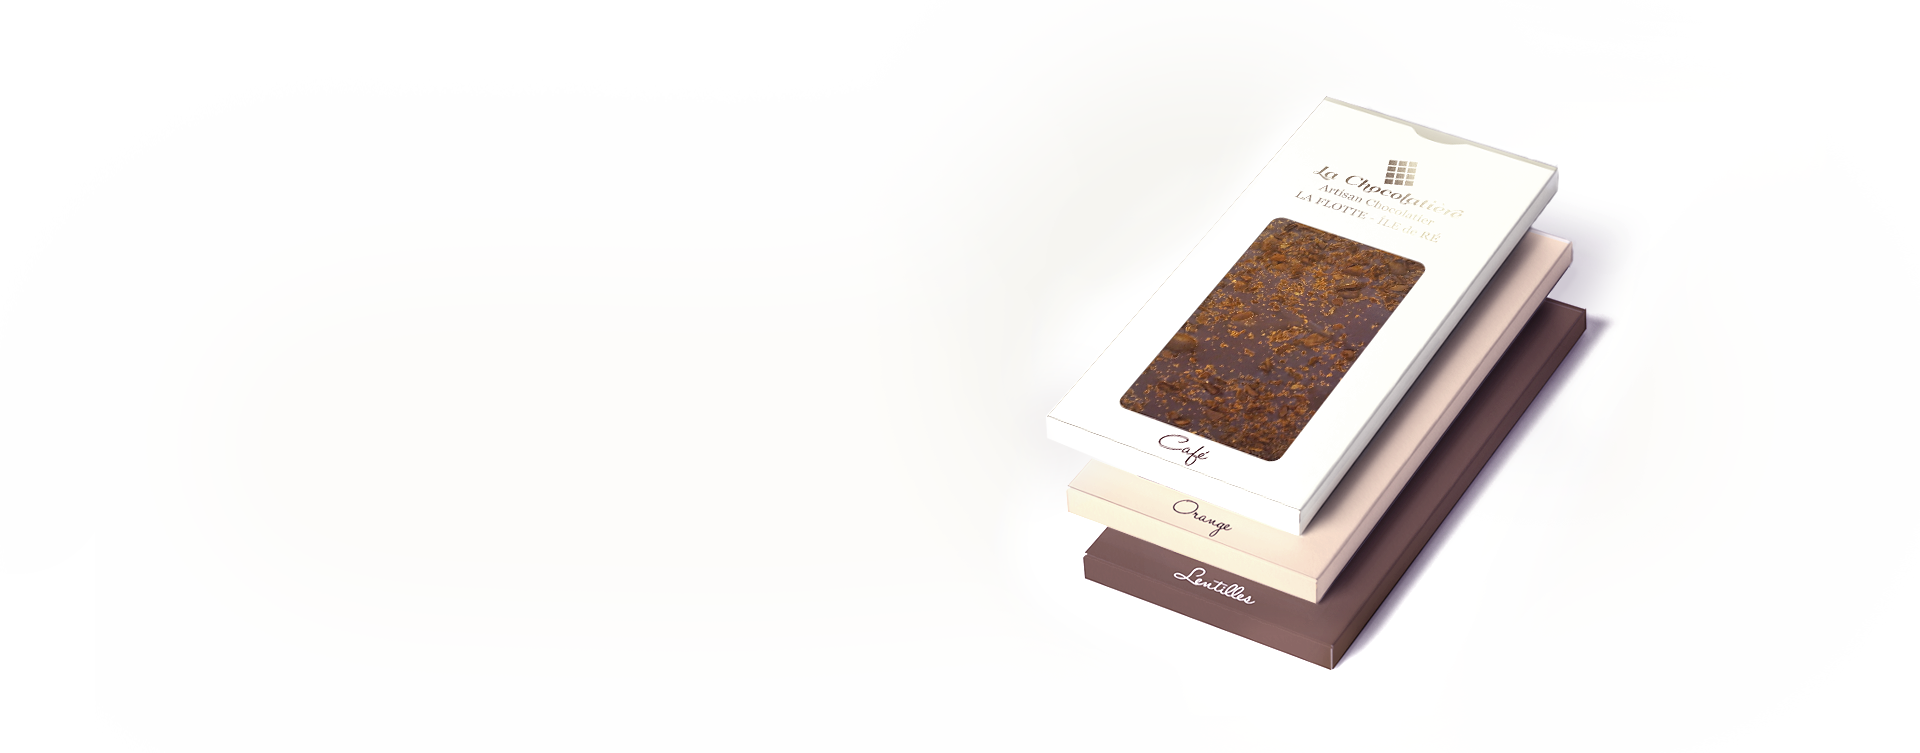 Tablettes de chocolat Artisanales aux saveurs uniques et originales